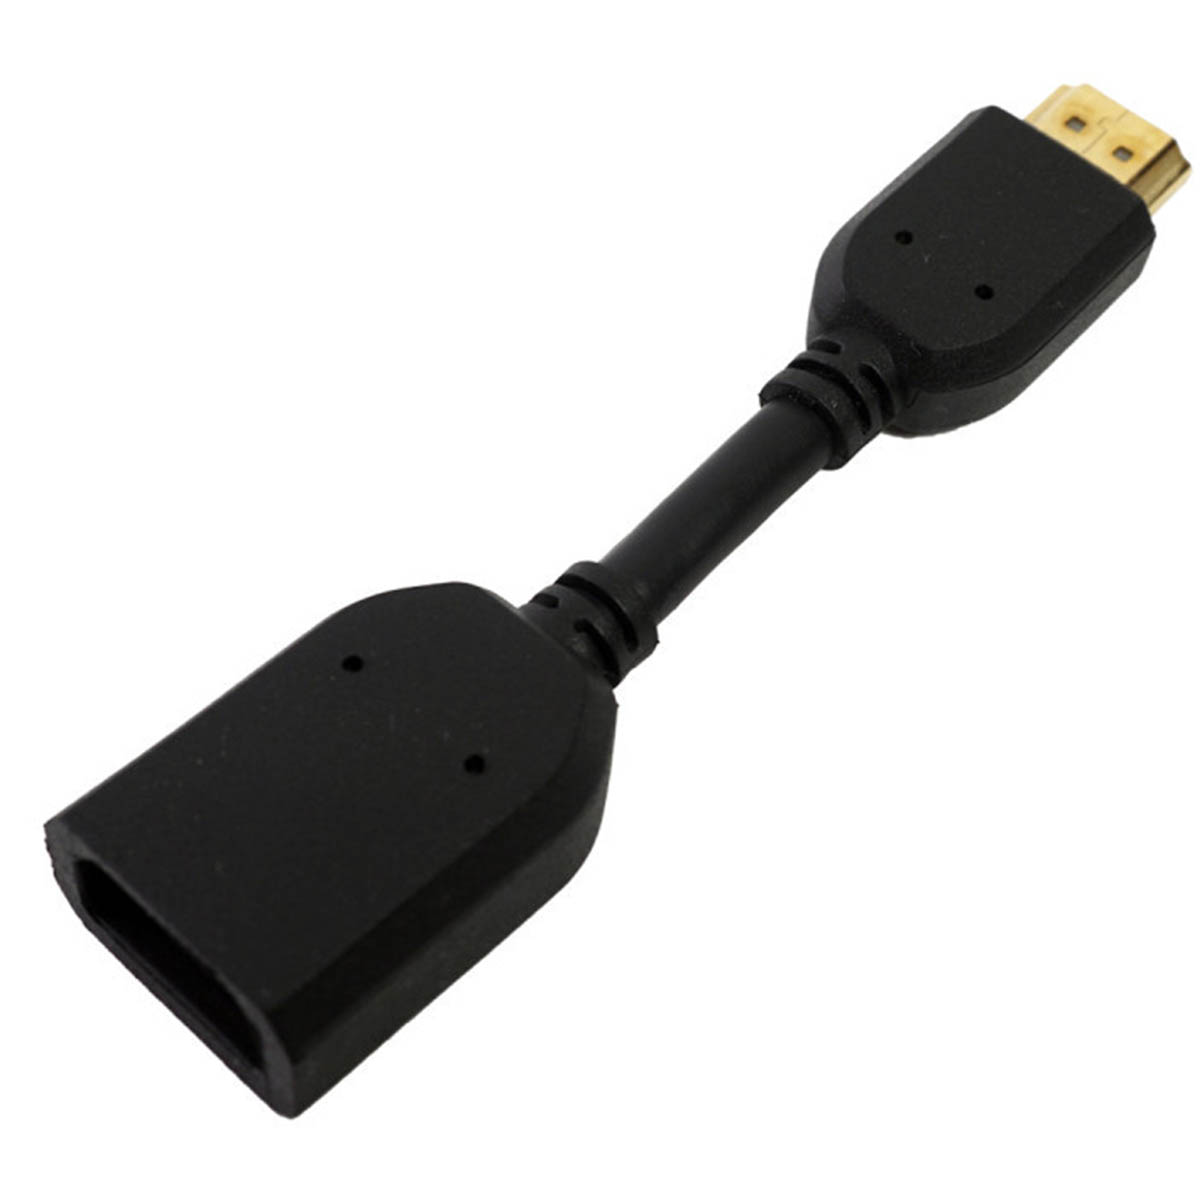 Переходник H03 HDMI (M) на HDMI (F), длина 10 см, цвет черный